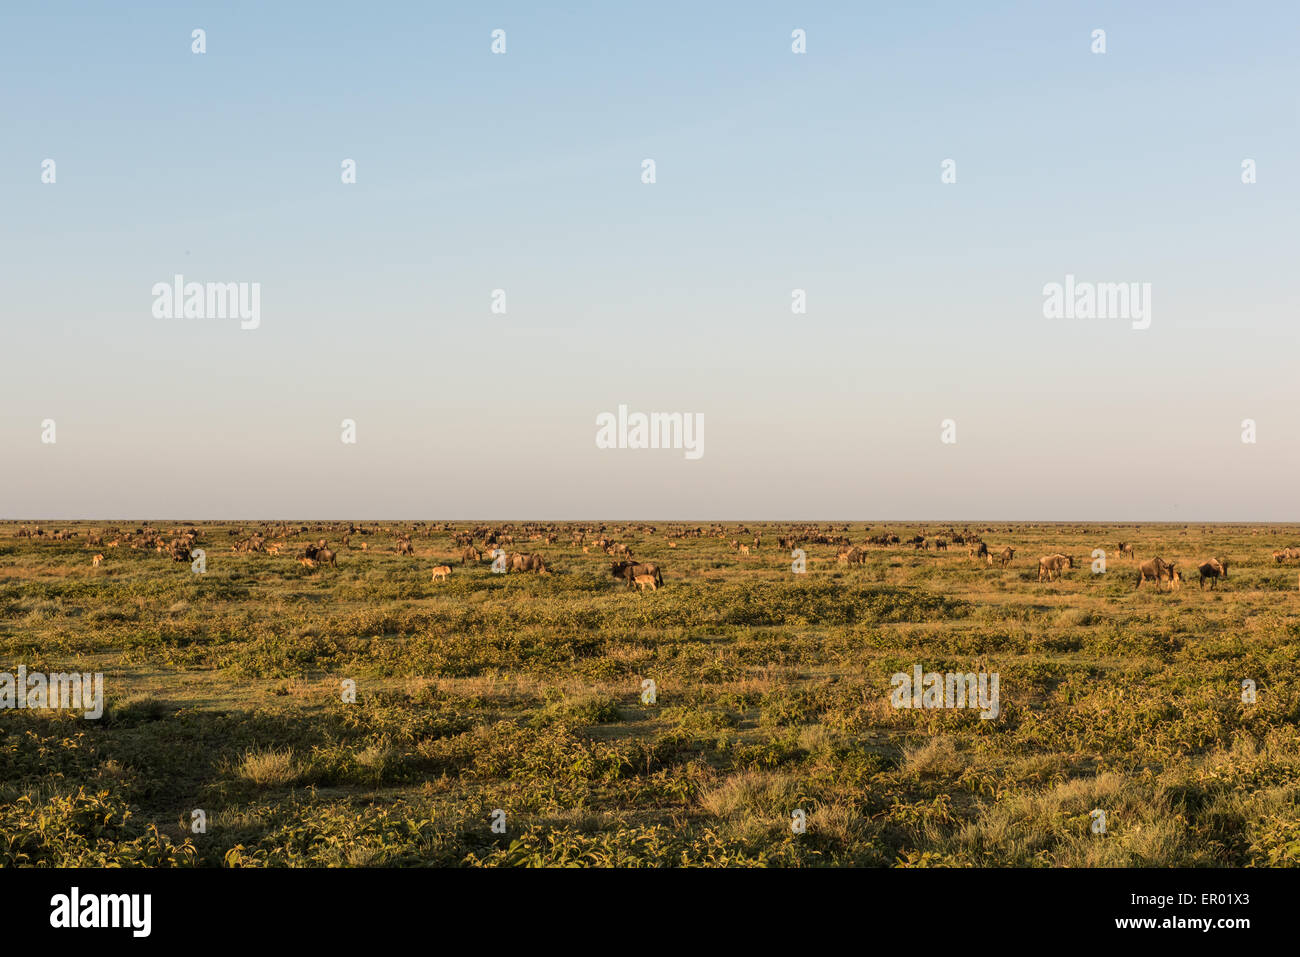 Ndutu wildebeest scene, Tanzania Stock Photo